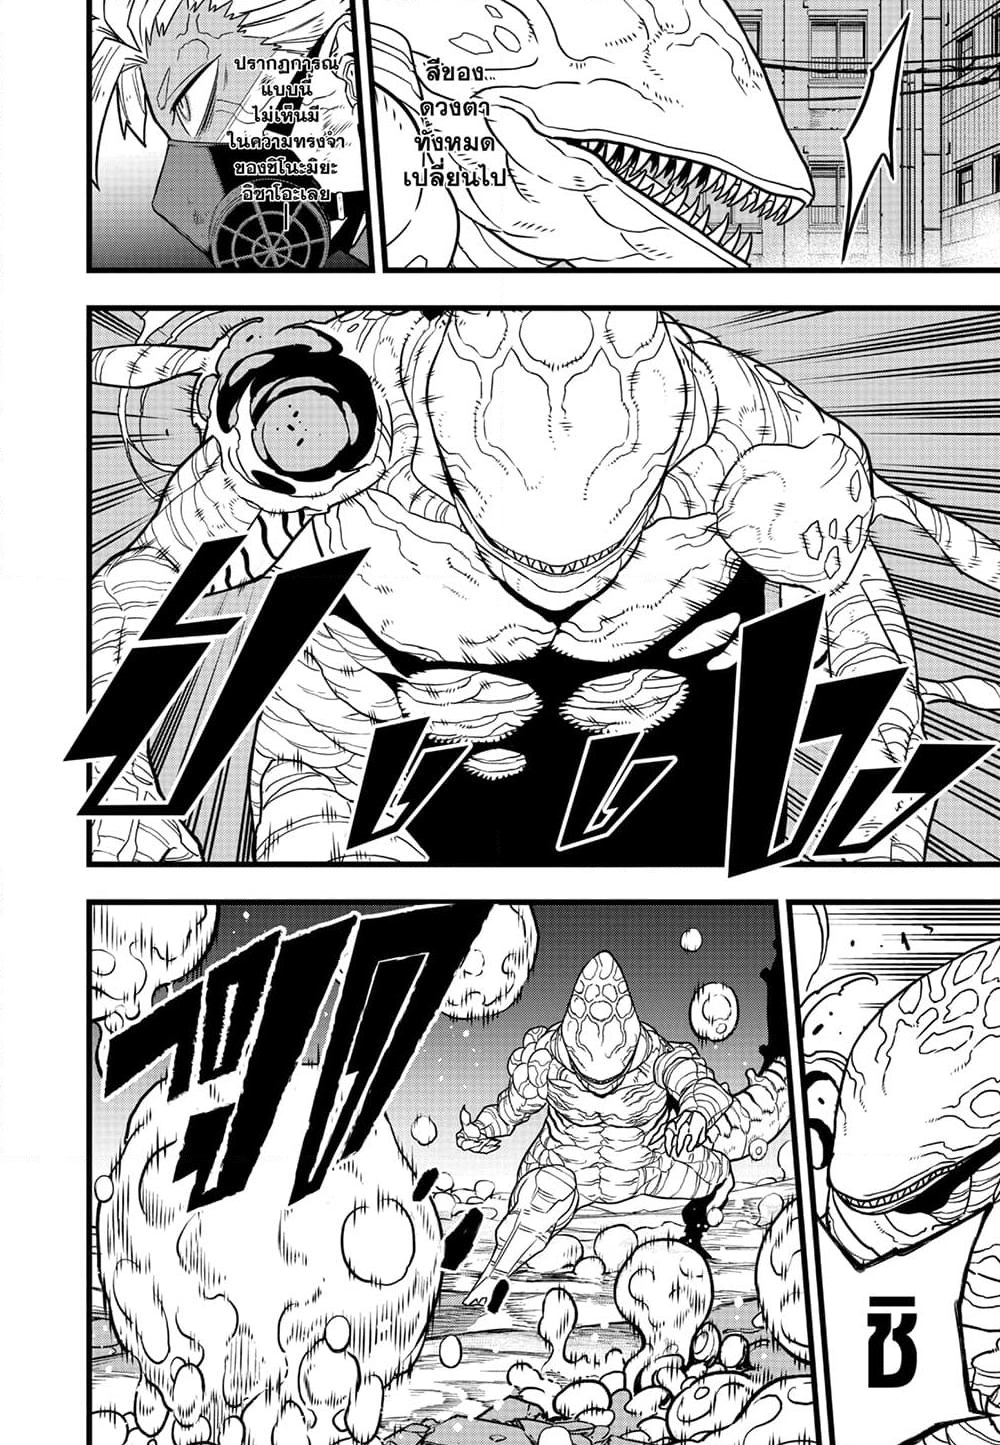 อ่านการ์ตูน Kaiju No.8 87 ภาพที่ 3